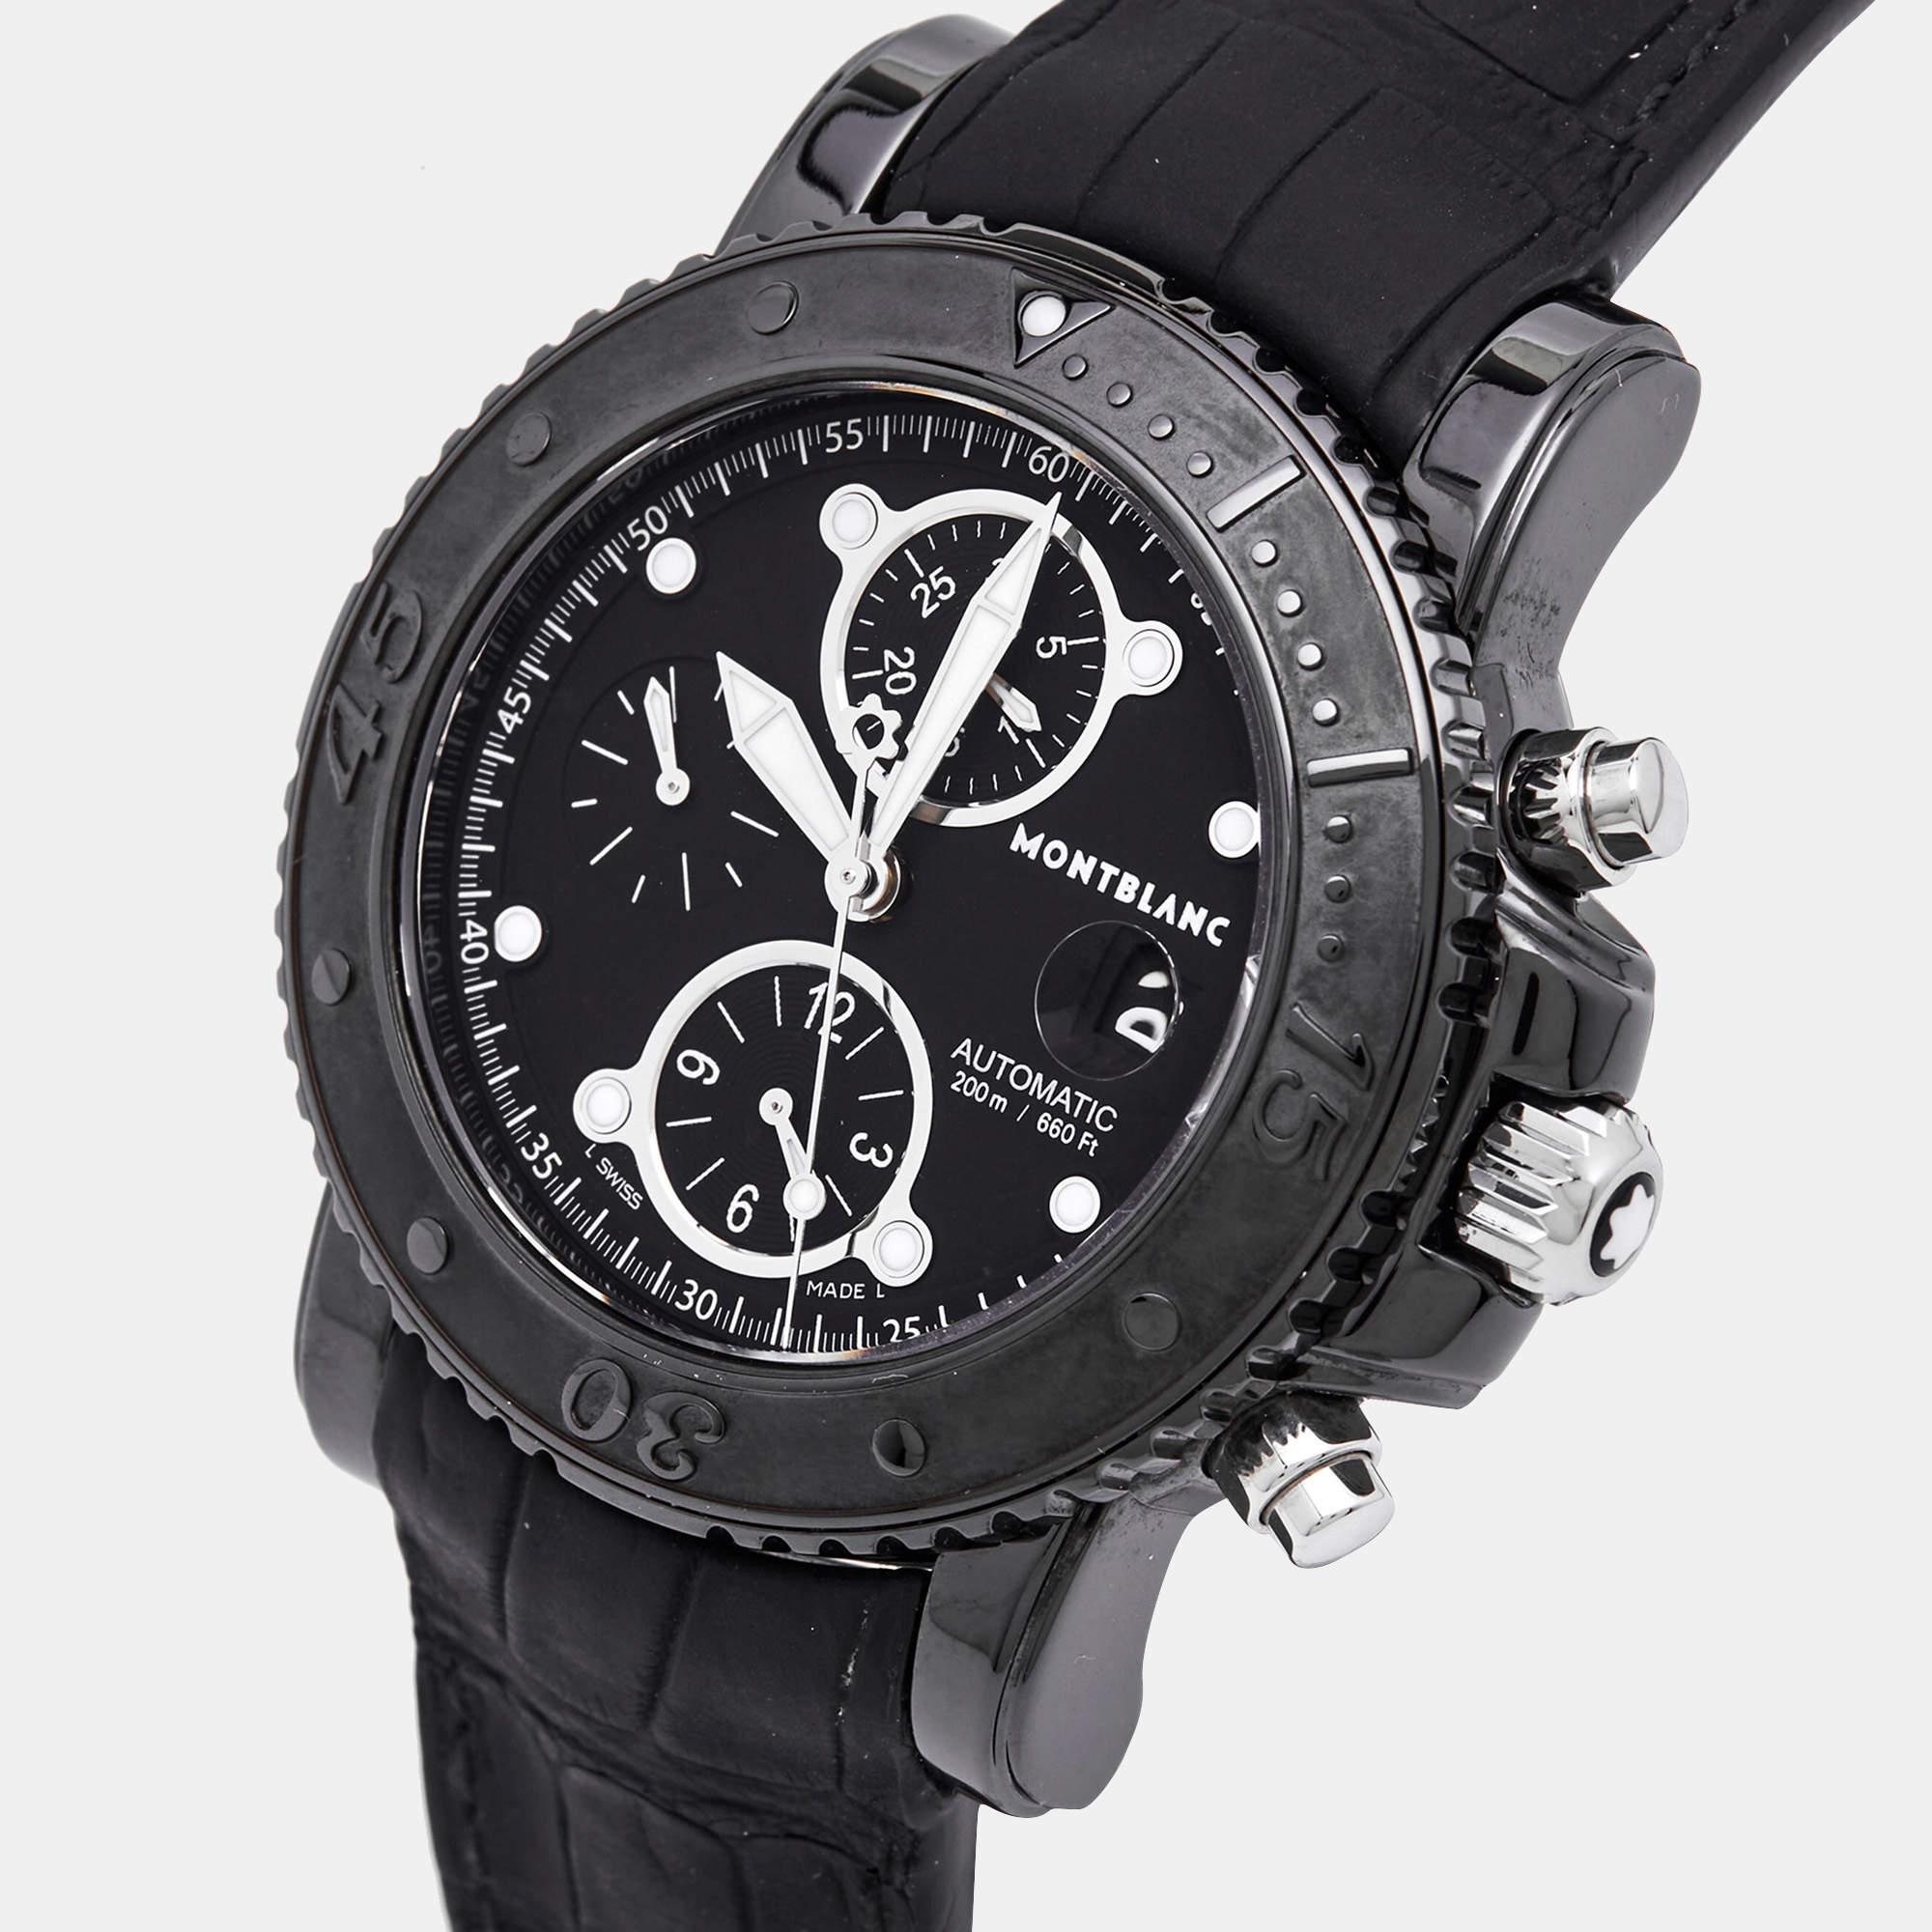 Sophistiquée et séduisante, cette montre Montblanc est le complément idéal pour un look classe et branché. Sa lunette revêtue de PVD noir est en acier inoxydable et souligne un cadran noir conçu avec des index des secondes, des aiguilles et des